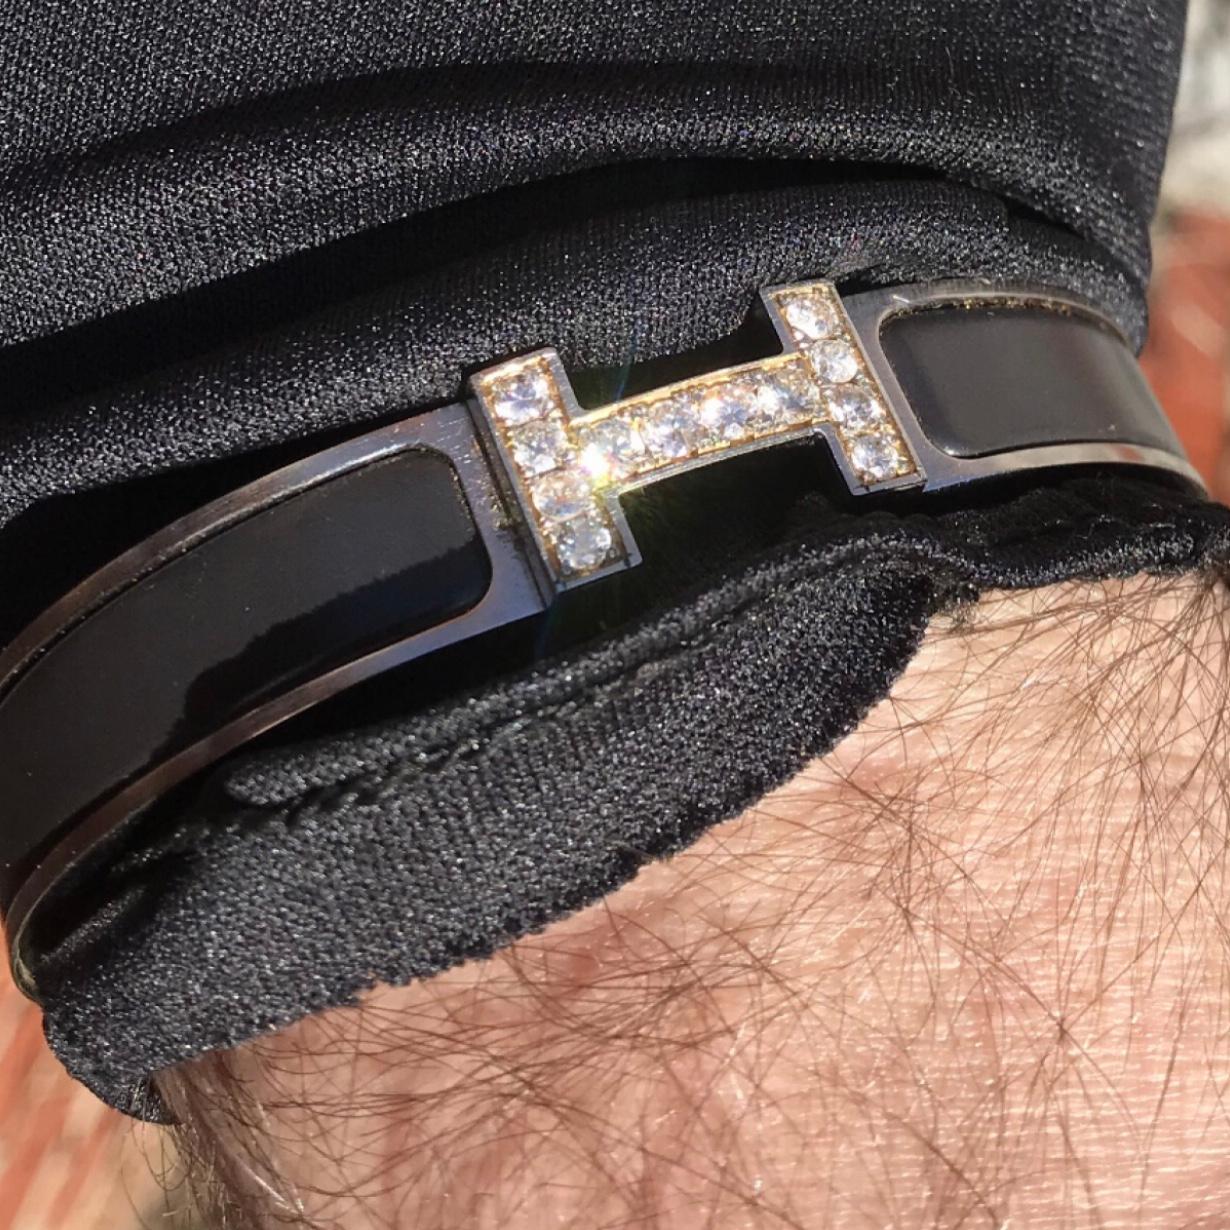 Bracelet en émail Hermes Clic H, diamant, taille GM, complet avec sa boîte d'origine.

Un bracelet Hermes Clic H original de couleur noir et argent est personnalisé et serti à la main d'environ 1,25 carats de diamants SI naturels provenant de mines